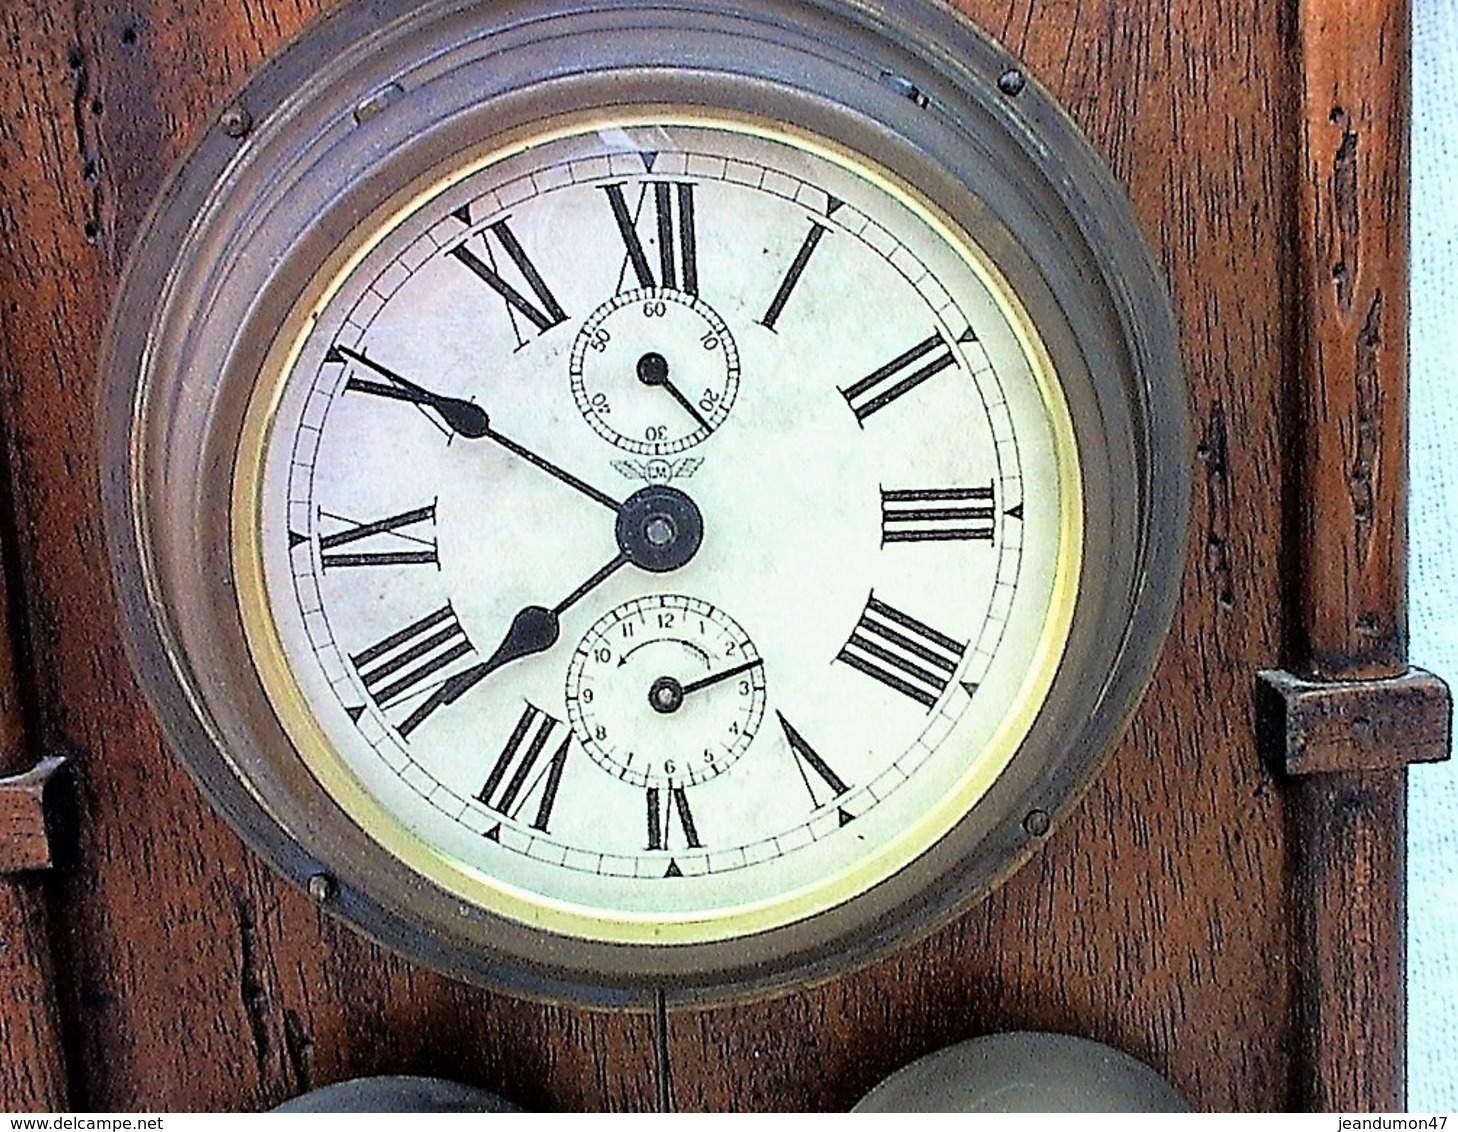 SUPERBE HORLOGE MURALE DE 1827. 40 CENTIMETRES DE HAUT. EN ETAT COMPLET DE FONCTIONNEMENT. - Clocks